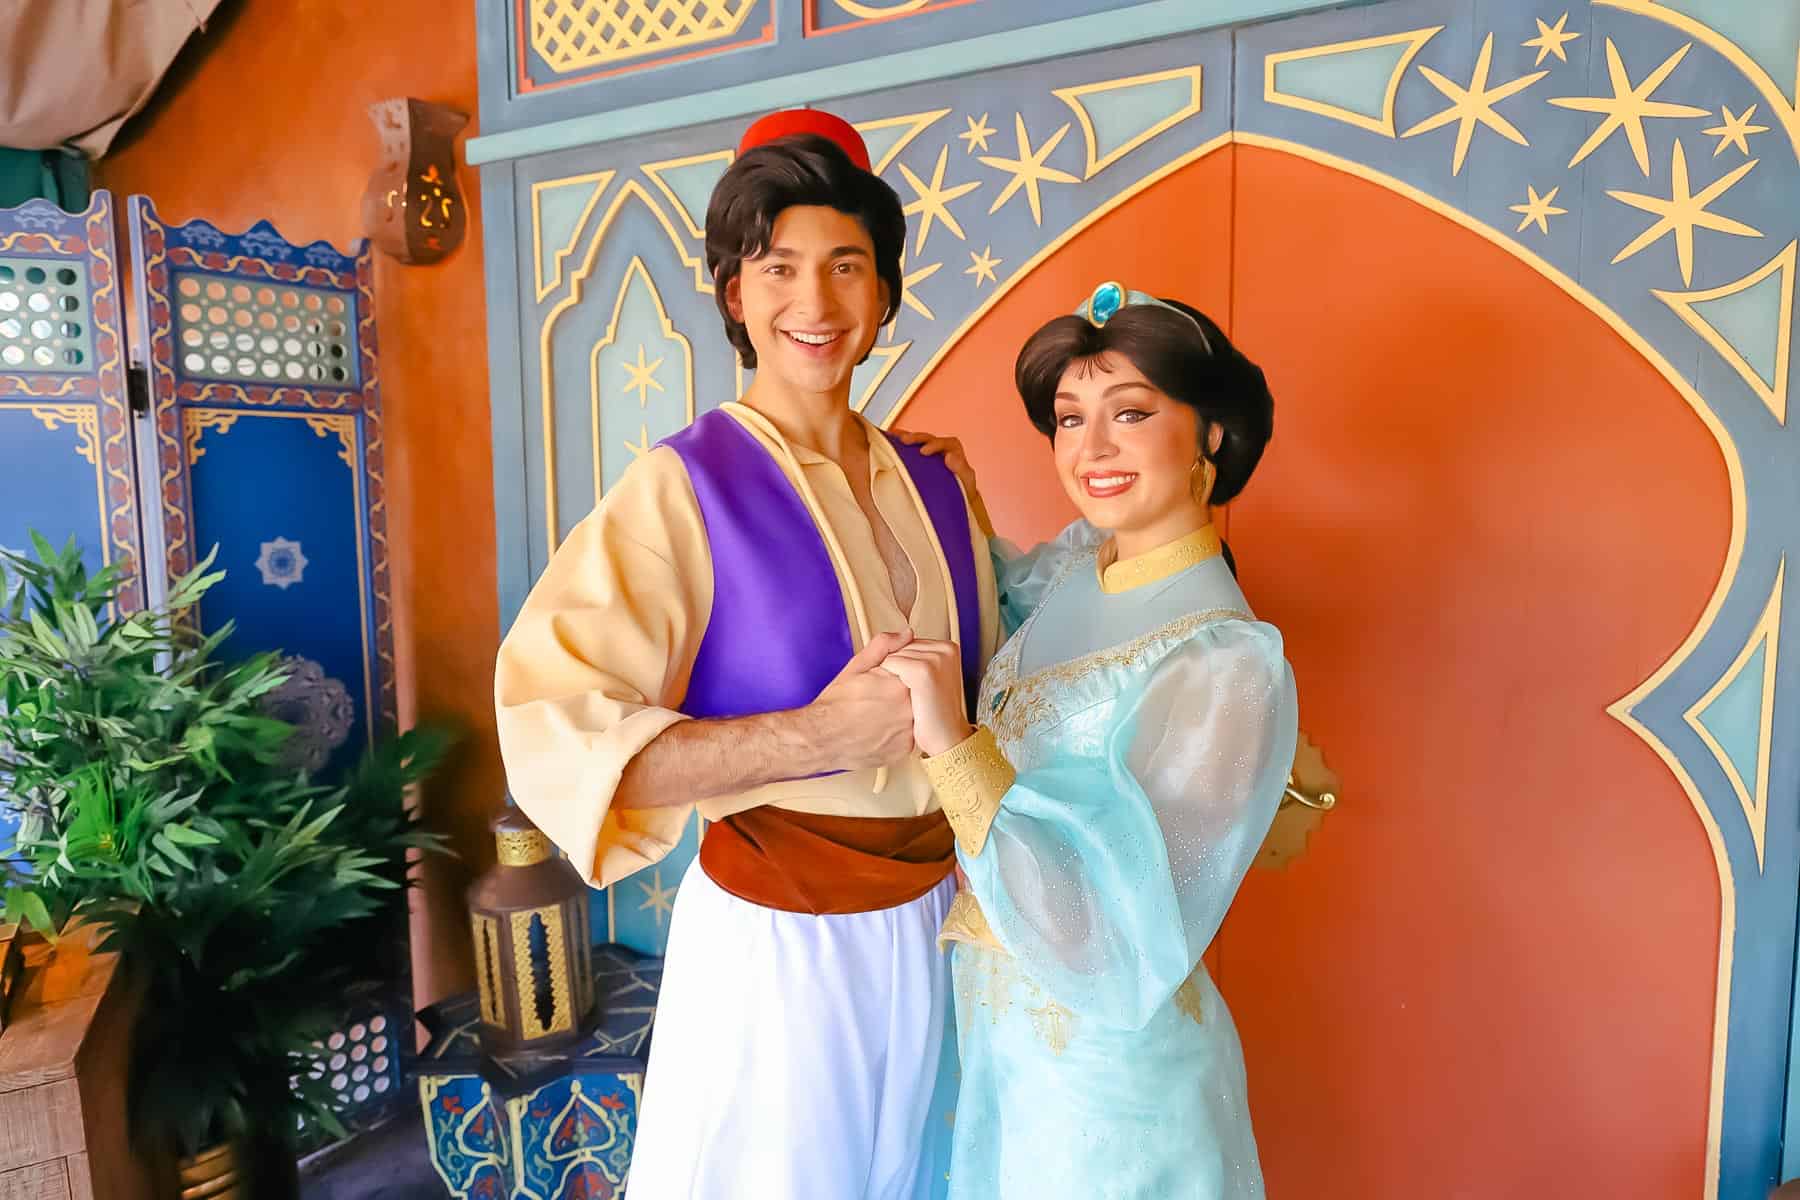 Aladdin and Jasmine's Magic Kingdom character meet